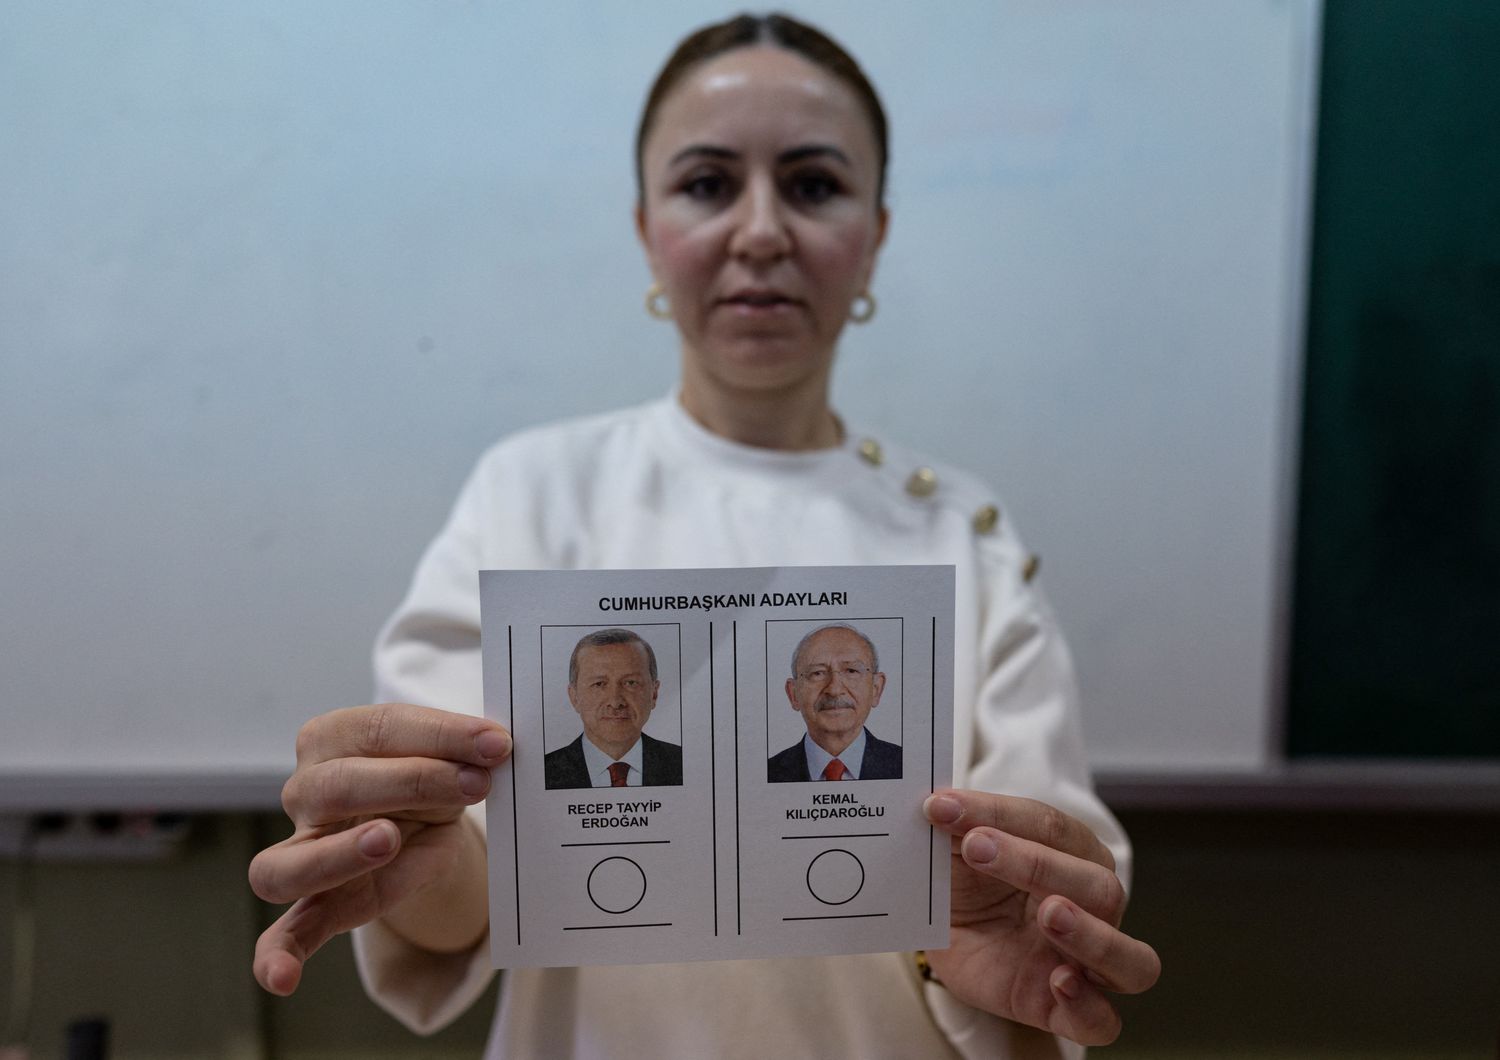 I due candidati alla presidenza della Turchia